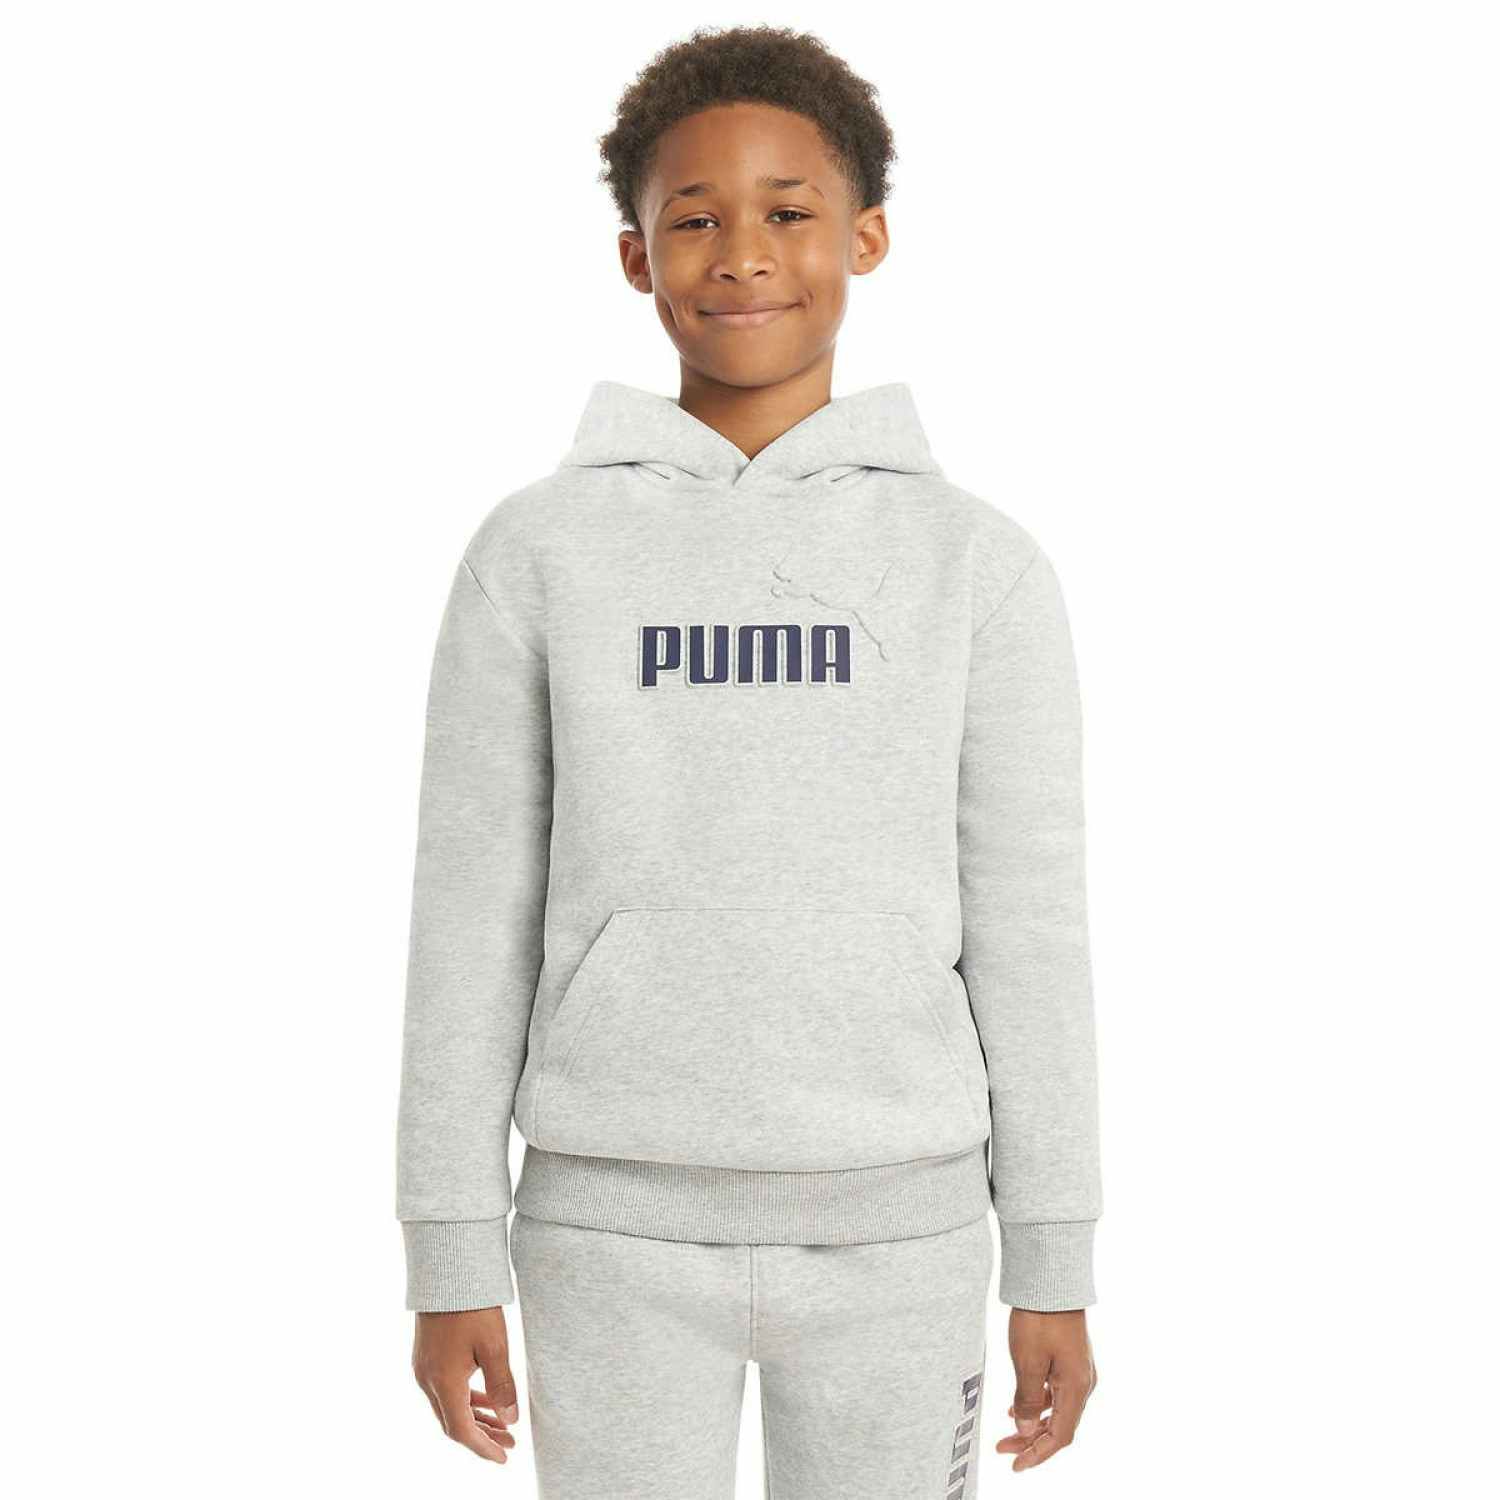 boy wearing a grey puma hoodie